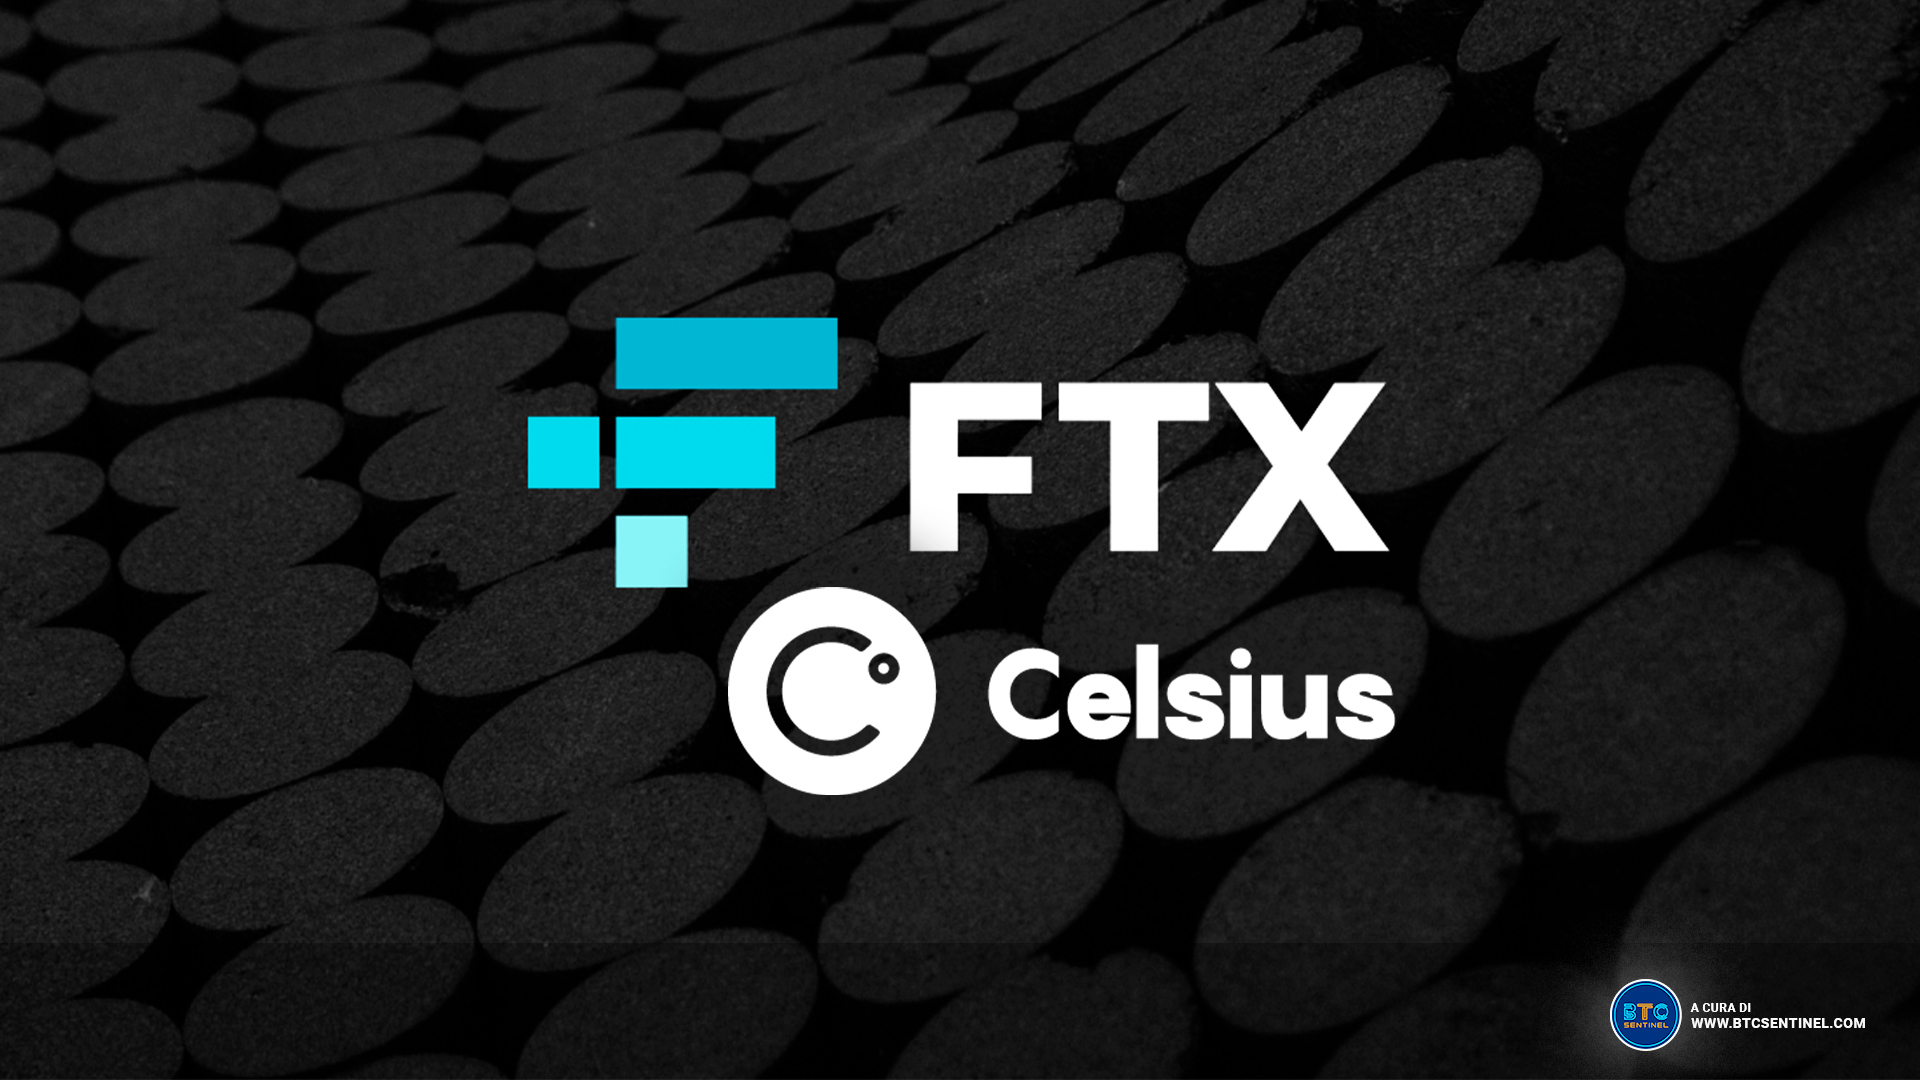 Dopo aver acquisito Voyager Digital Ltd, FTX sta valutando un'offerta per gli asset di Celsius Network